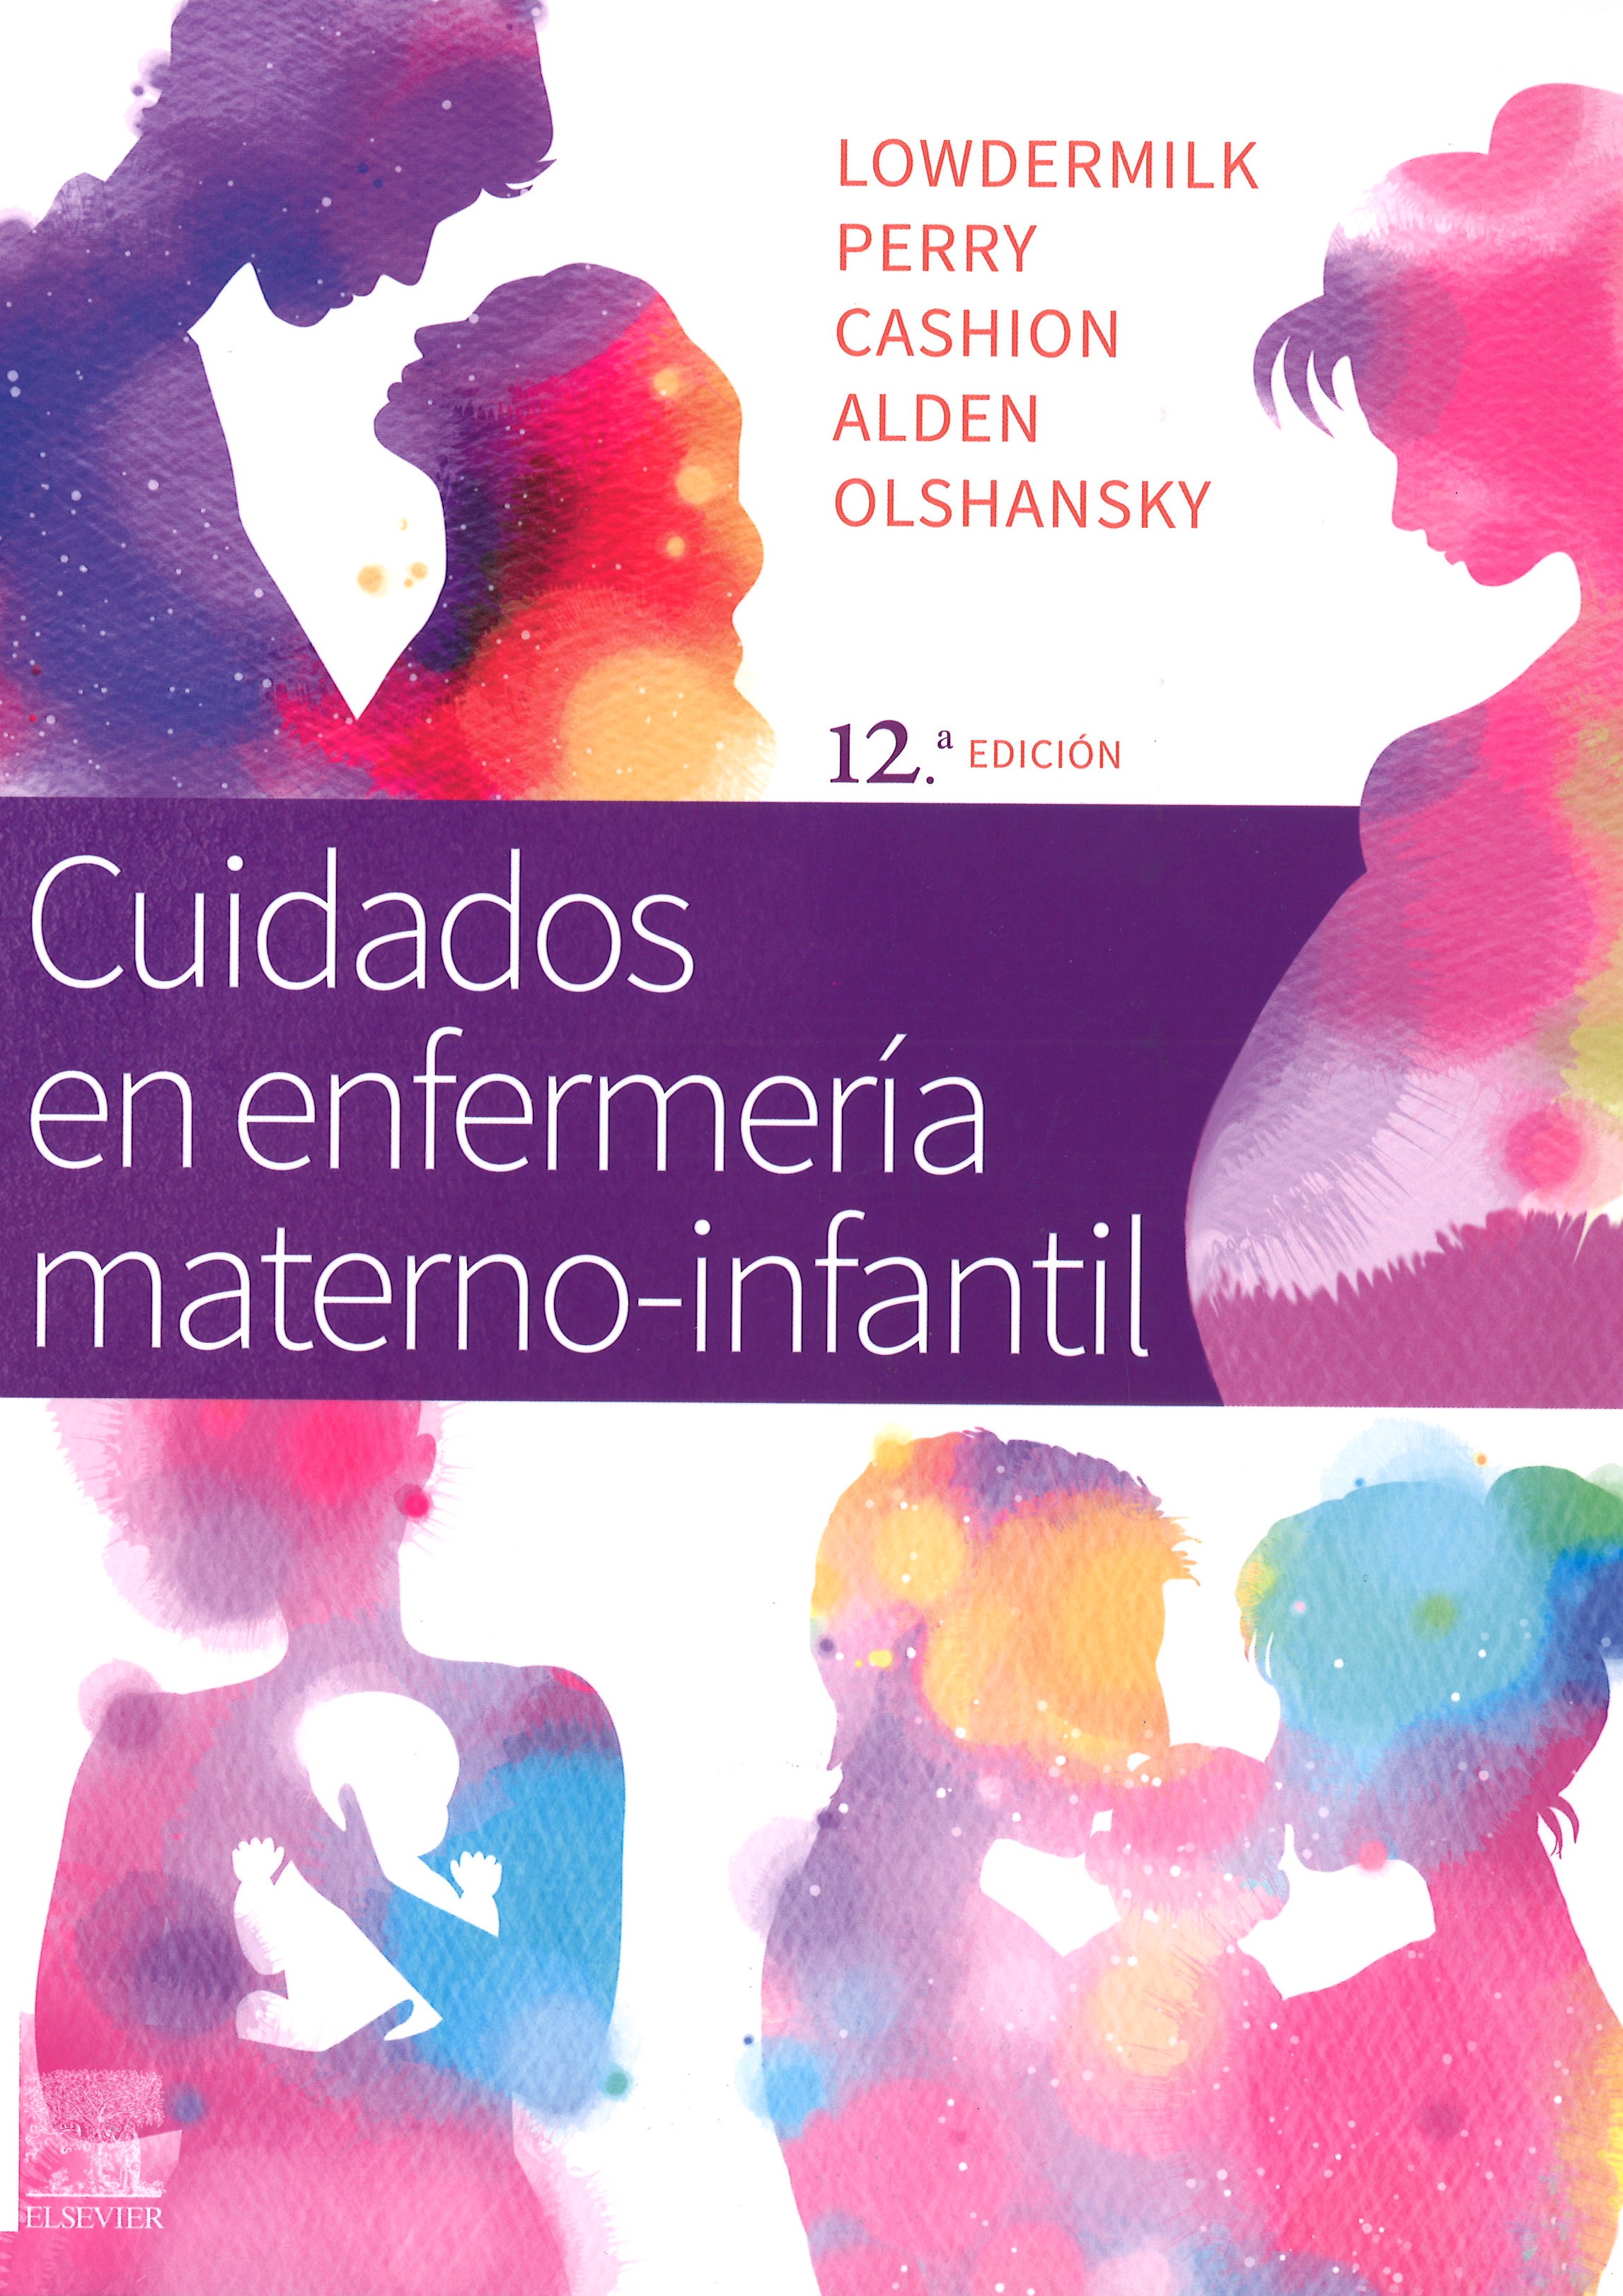 Imagen de portada del libro Cuidados de enfermería materno-infantil